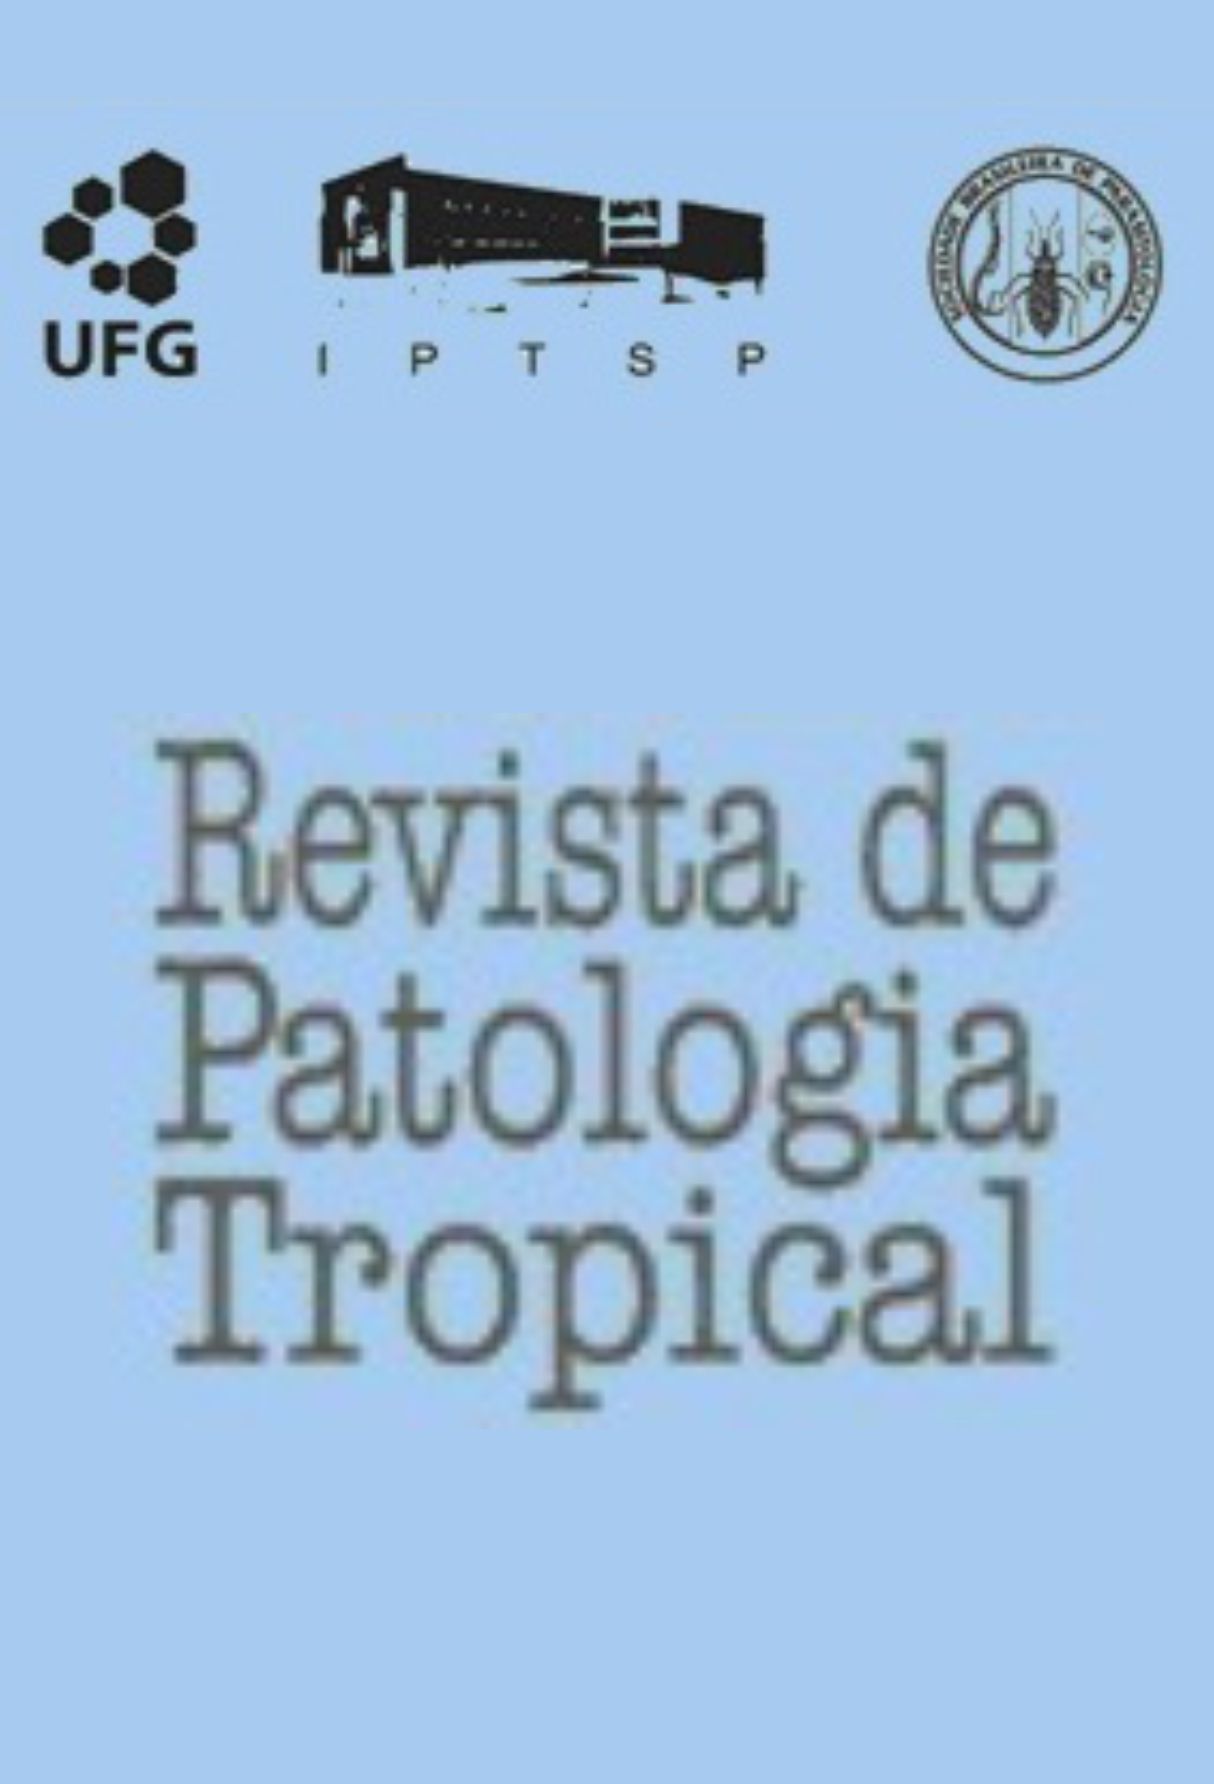 Capa: Revista de Patologia Tropical